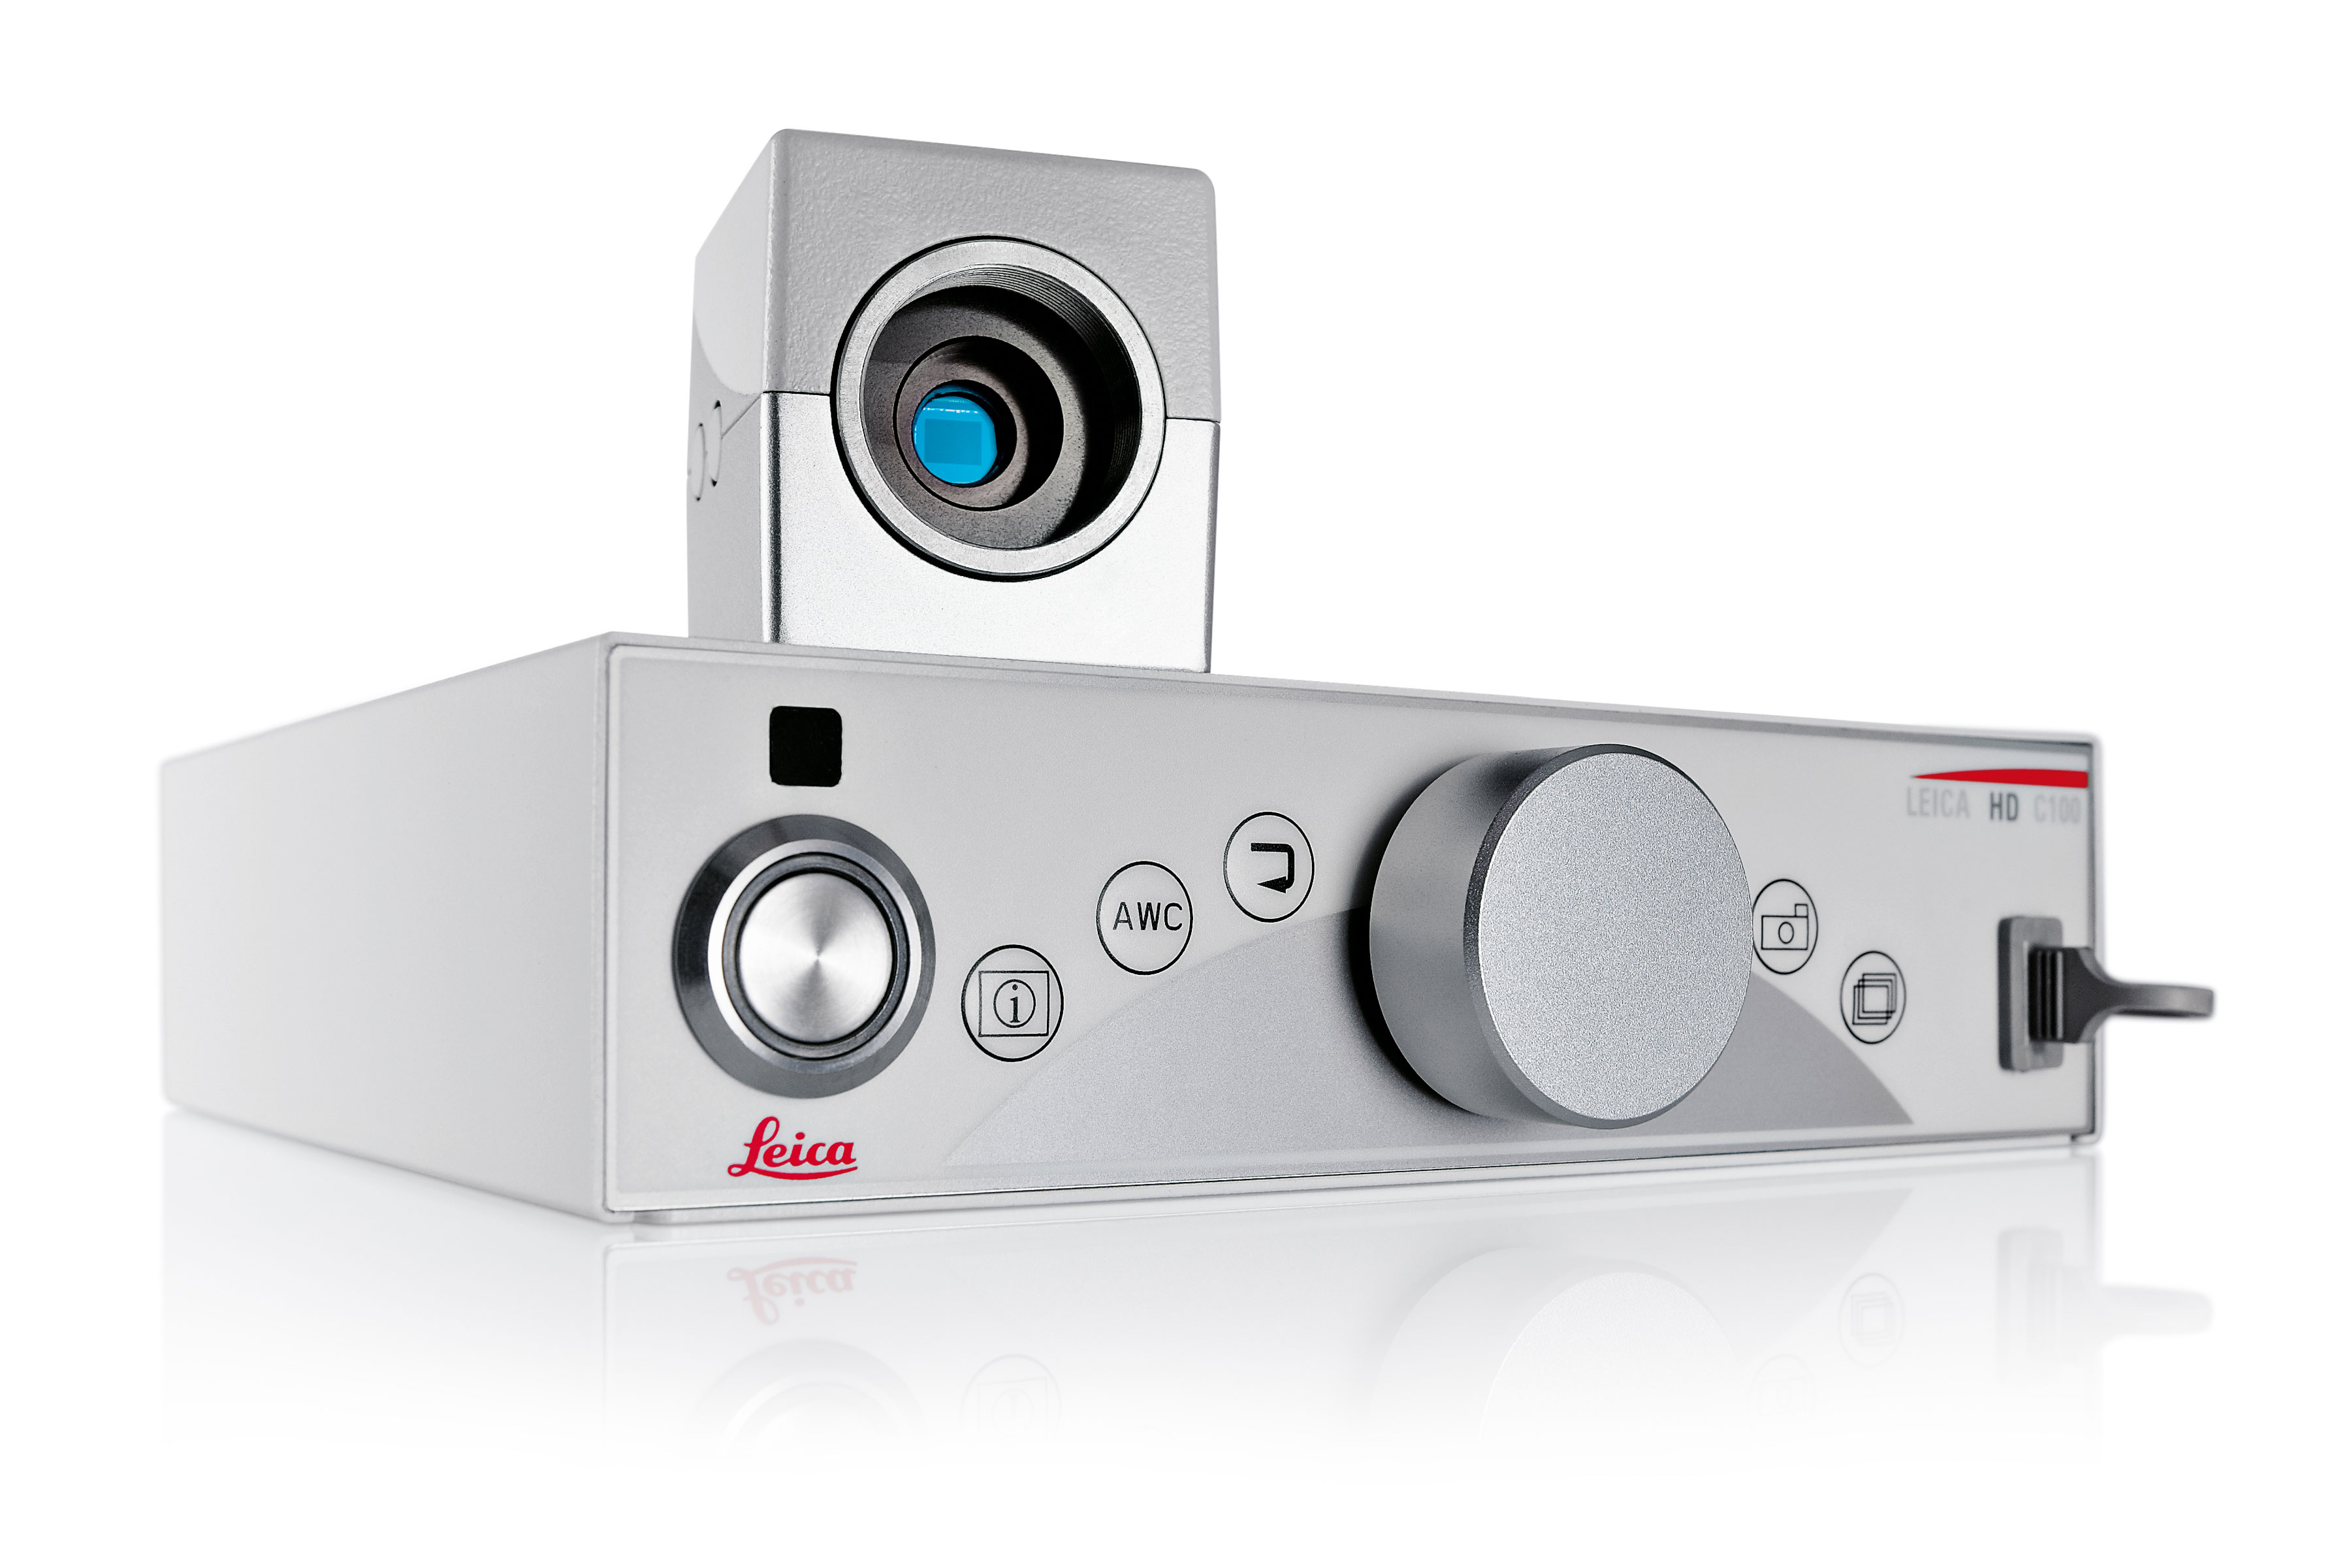 La caméra médicale Leica HD C100 en résolution HD et SD, dotée d’une interface utilisateur intuitive ,permet un  transfert de données rapide et aisé  vers les dispositifs de stockage externes.